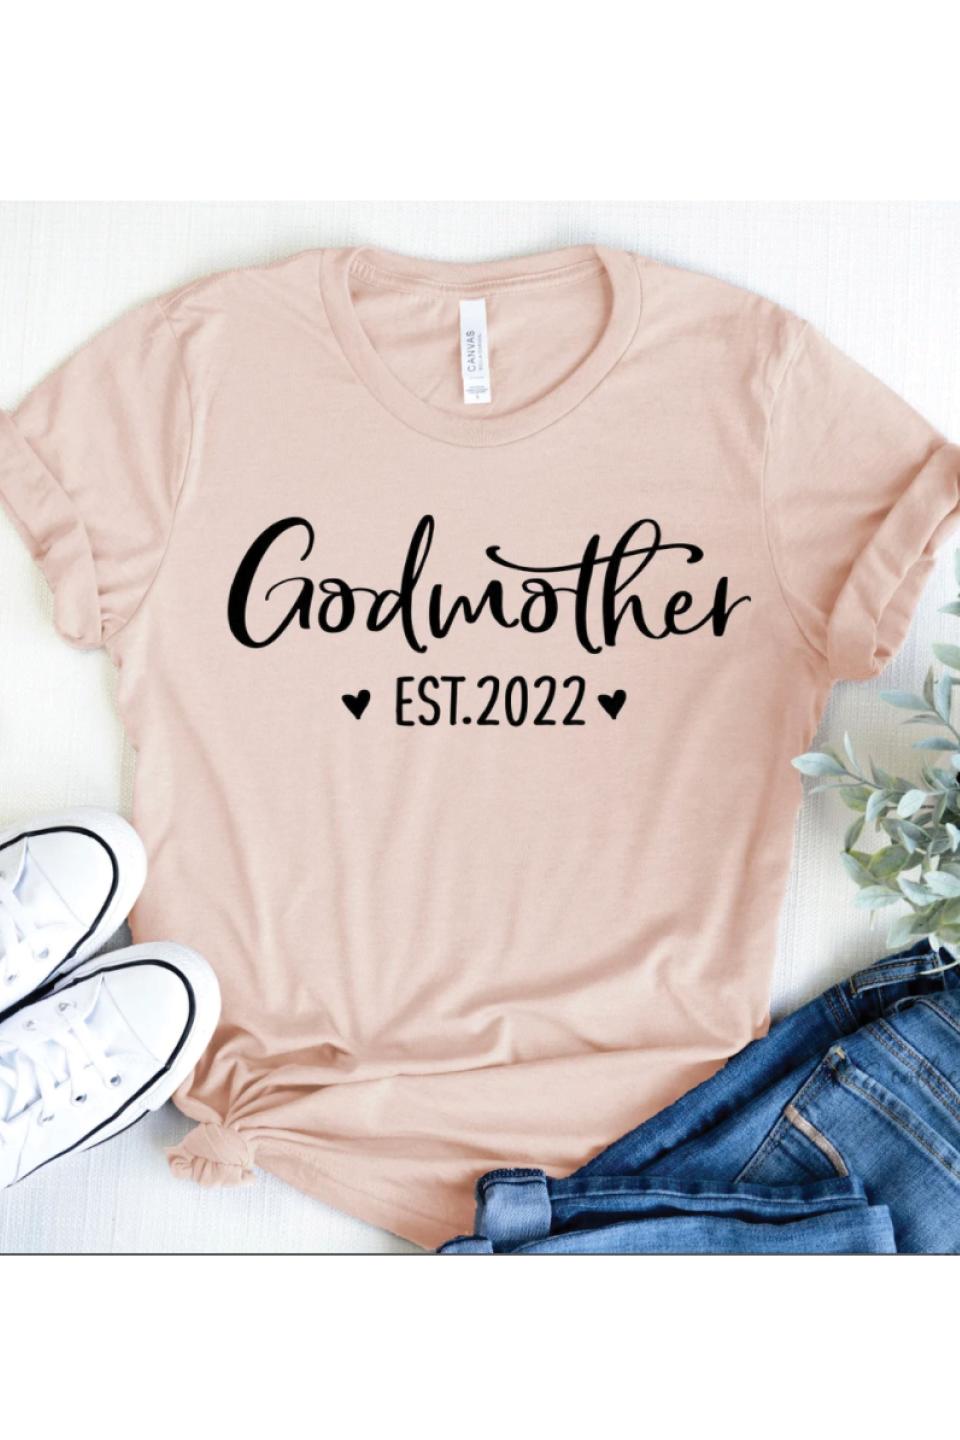 Godmother Shirt